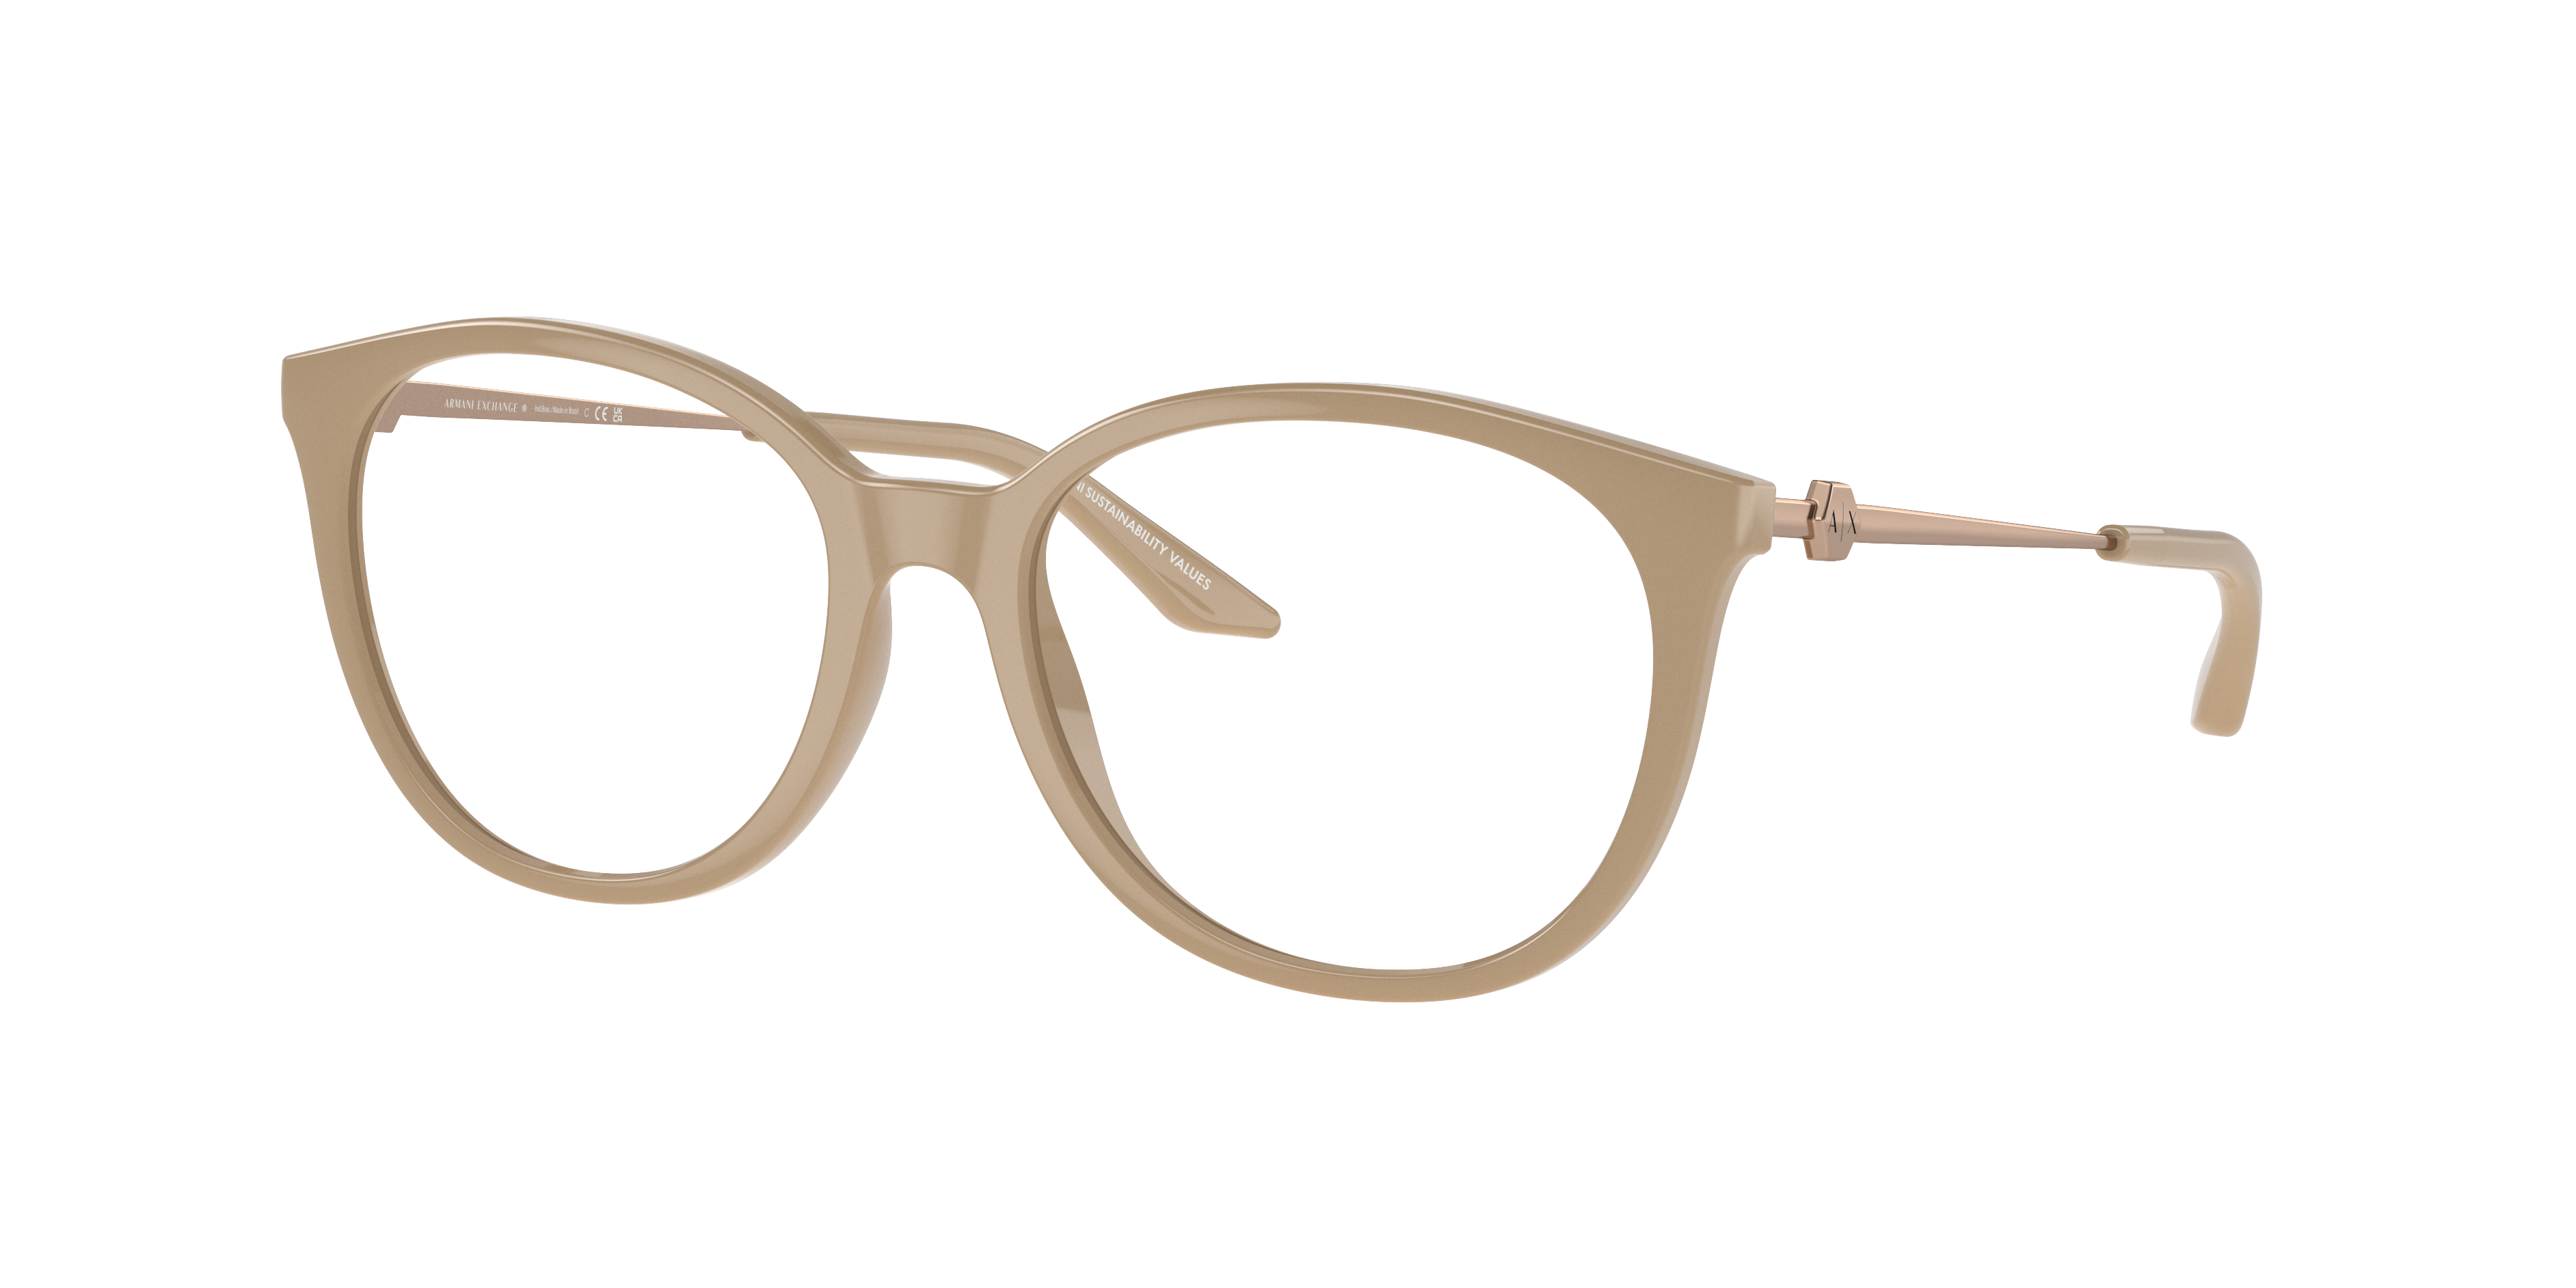 Armani Exchange AX3109 Shiny Tundra Eyeglasses | Glasses.com® | Free ...